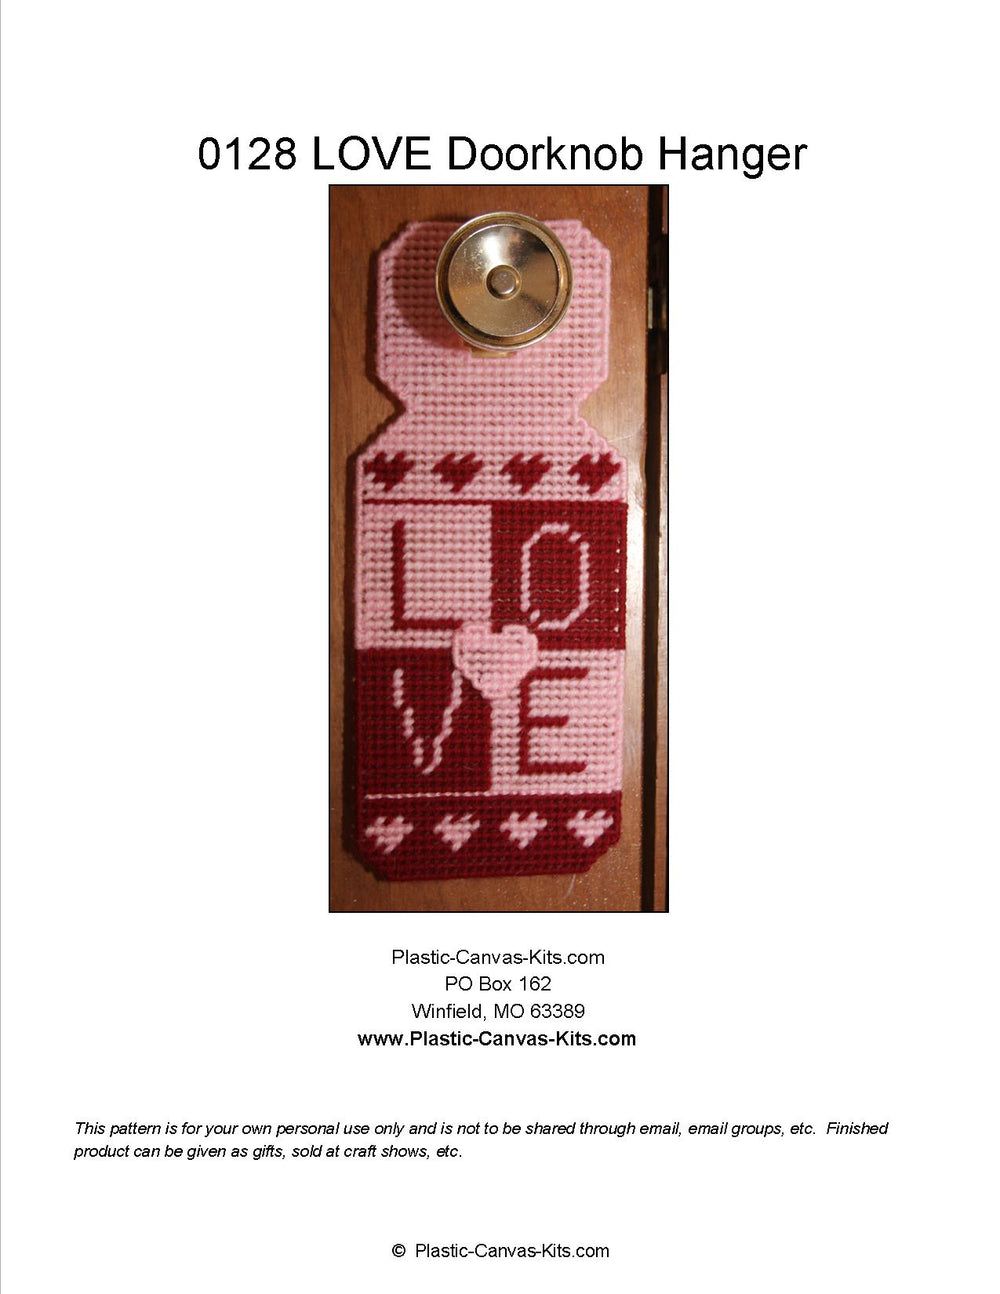 Love Doorknob Hanger